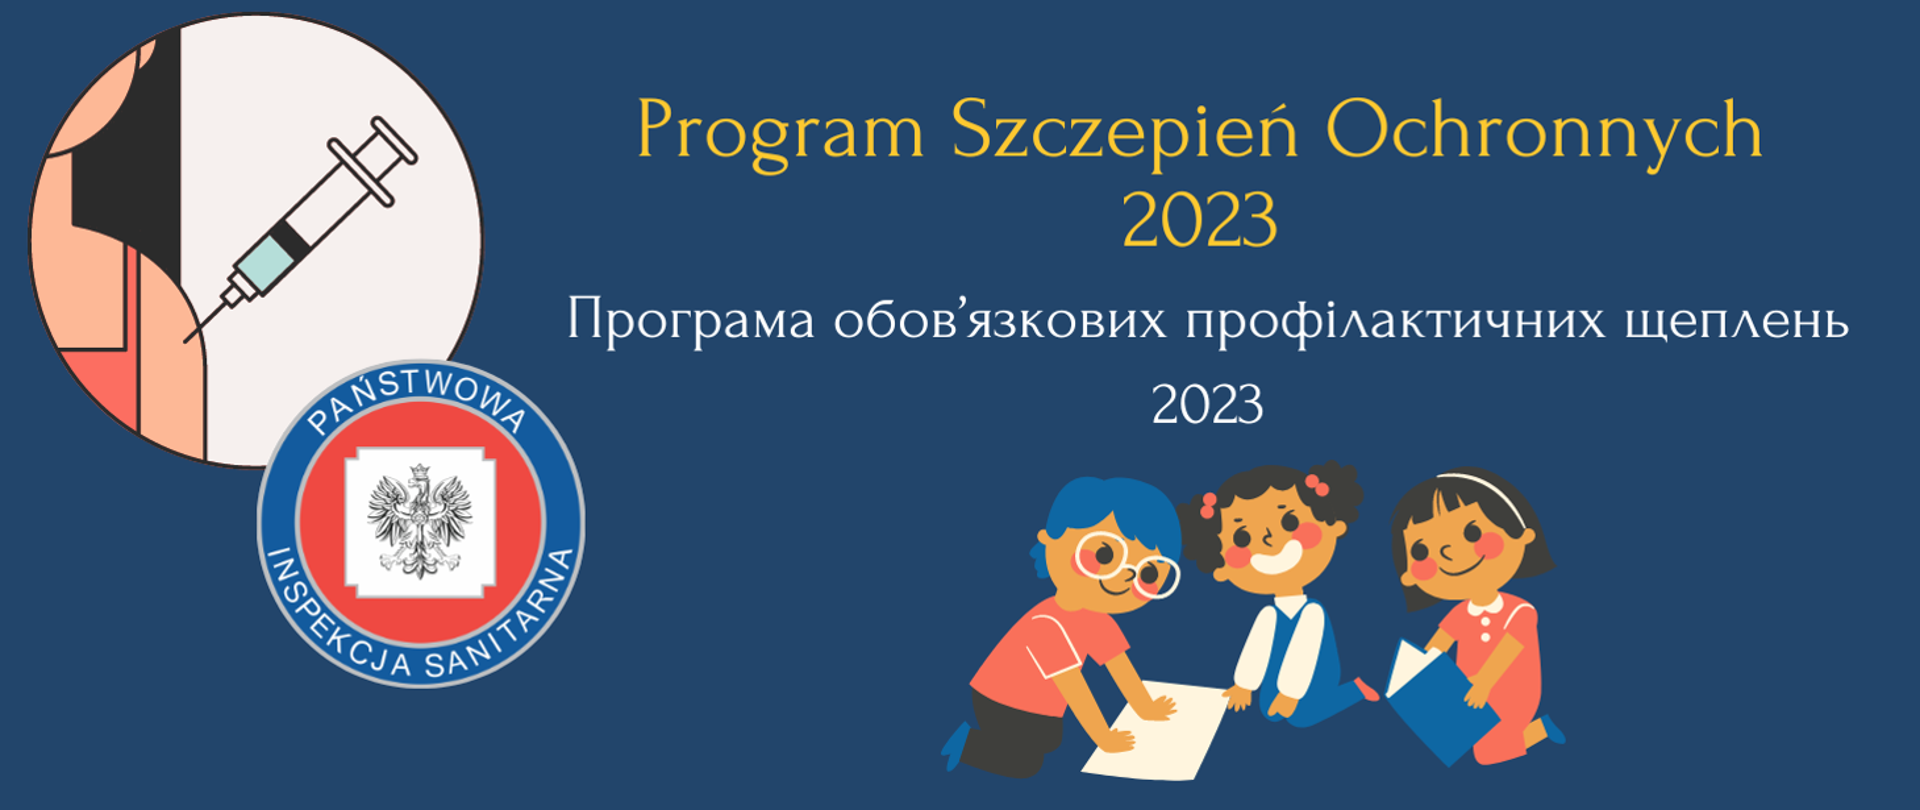 Grafika przedstawia napis program szczepień ochronnych 2023 w języku polskim i ukraińskim, ilustrację iniekcji domięśniowej, uśmiechniętych dzieci oraz logo Państwowej Inspekcji Sanitarnej.